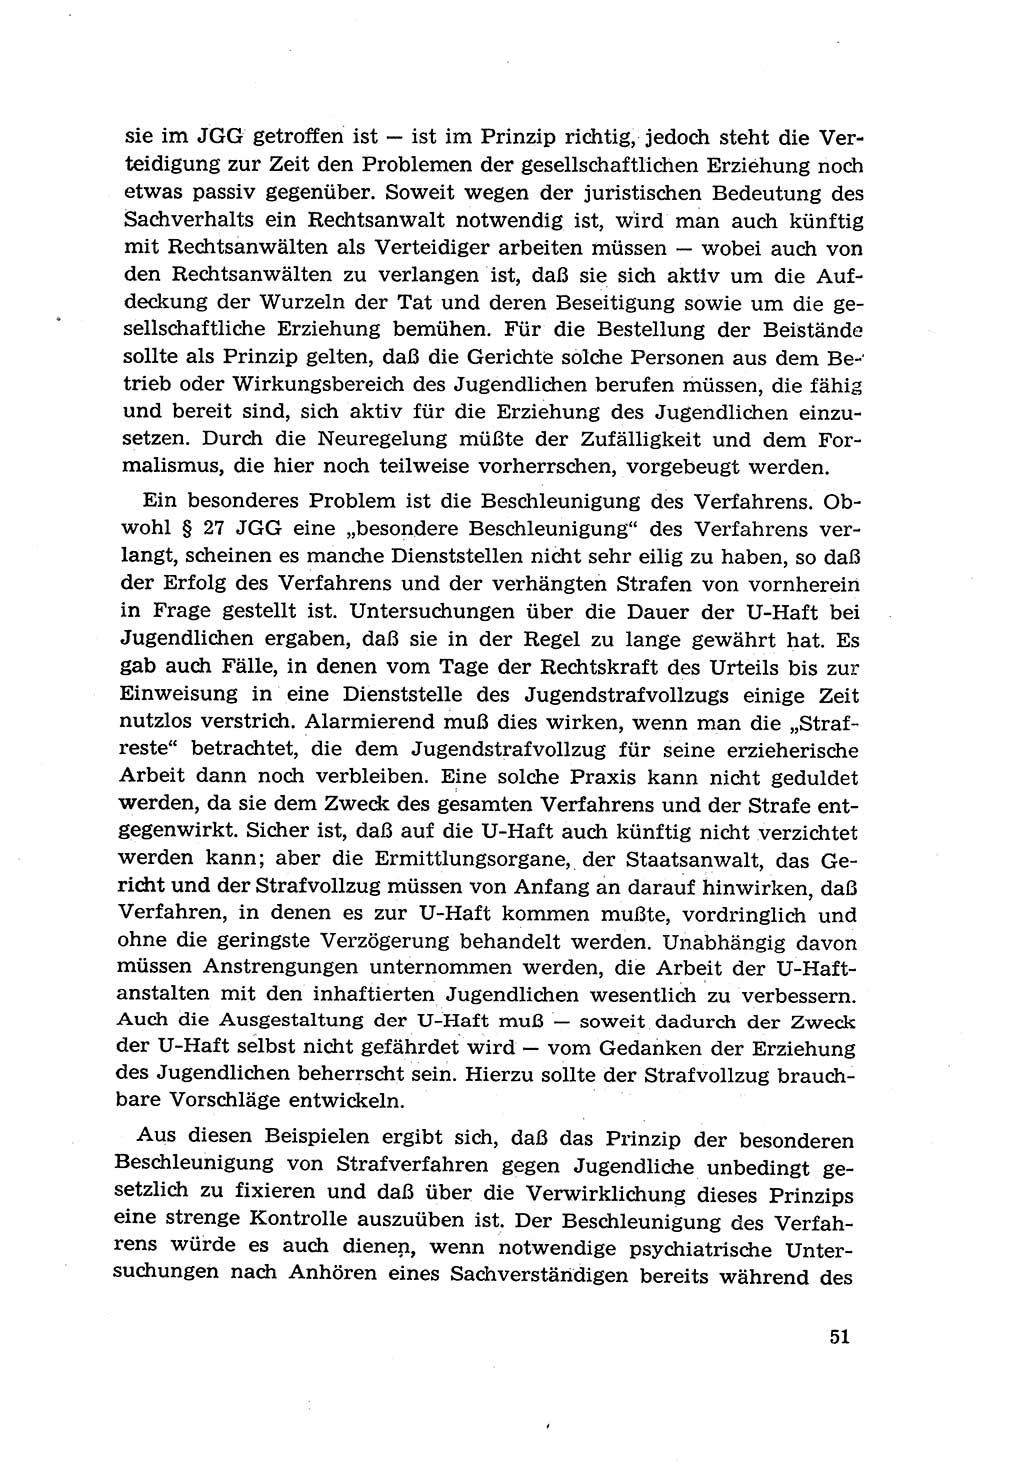 Zur Entwicklung des sozialistischen Strafrechts der Deutschen Demokratischen Republik (DDR) 1960, Seite 51 (Entw. soz. Strafr. DDR 1960, S. 51)